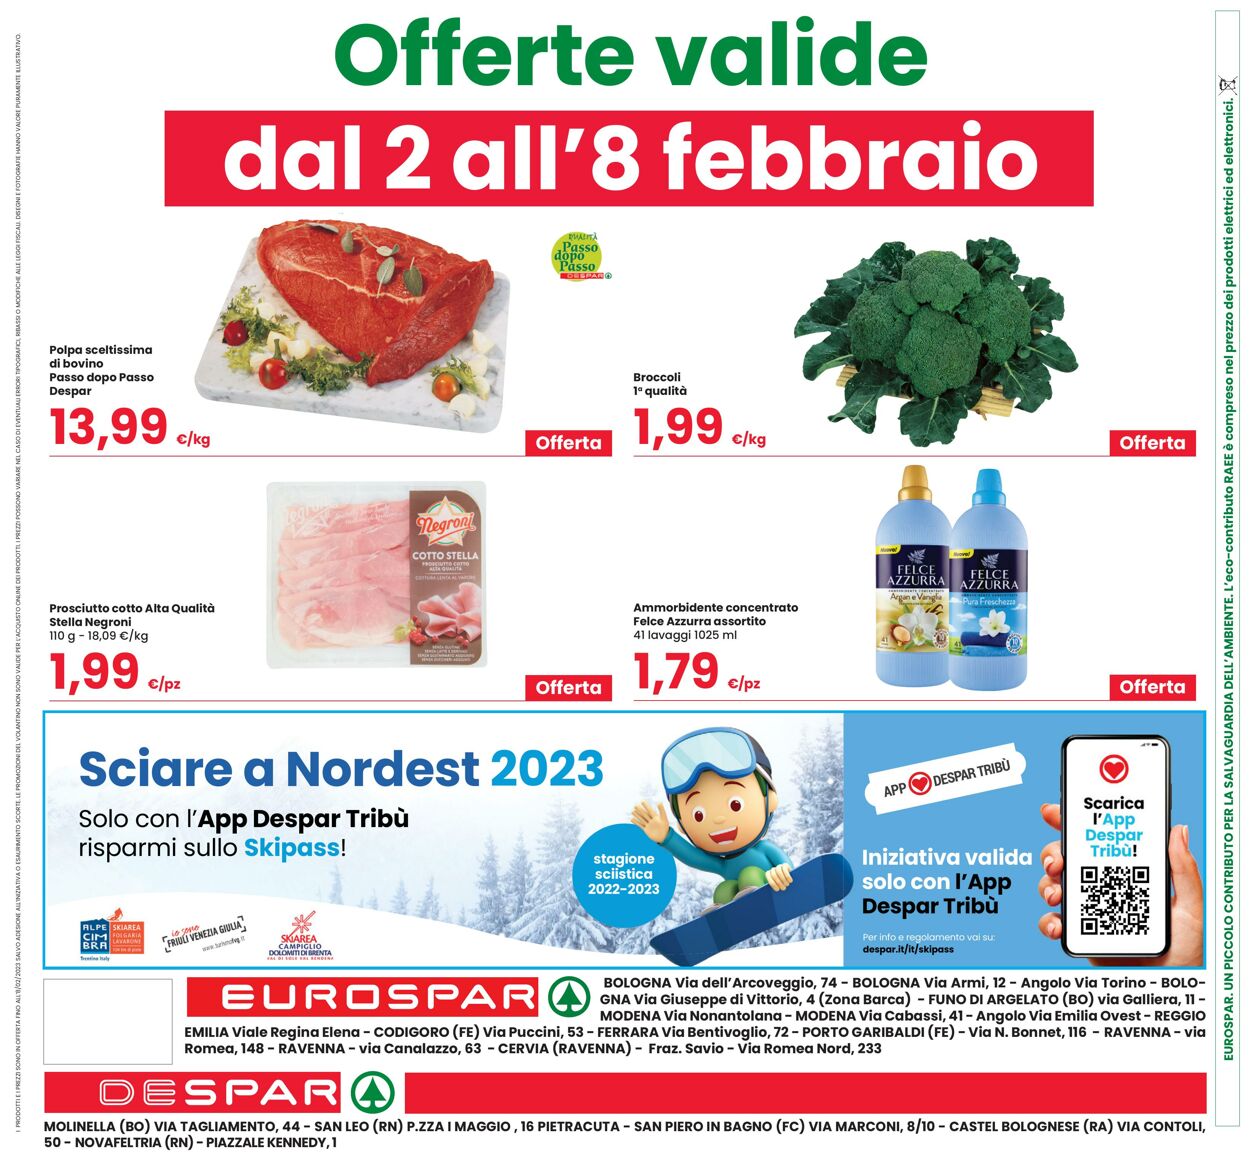 Volantino Eurospar 26.01.2023 - 08.02.2023